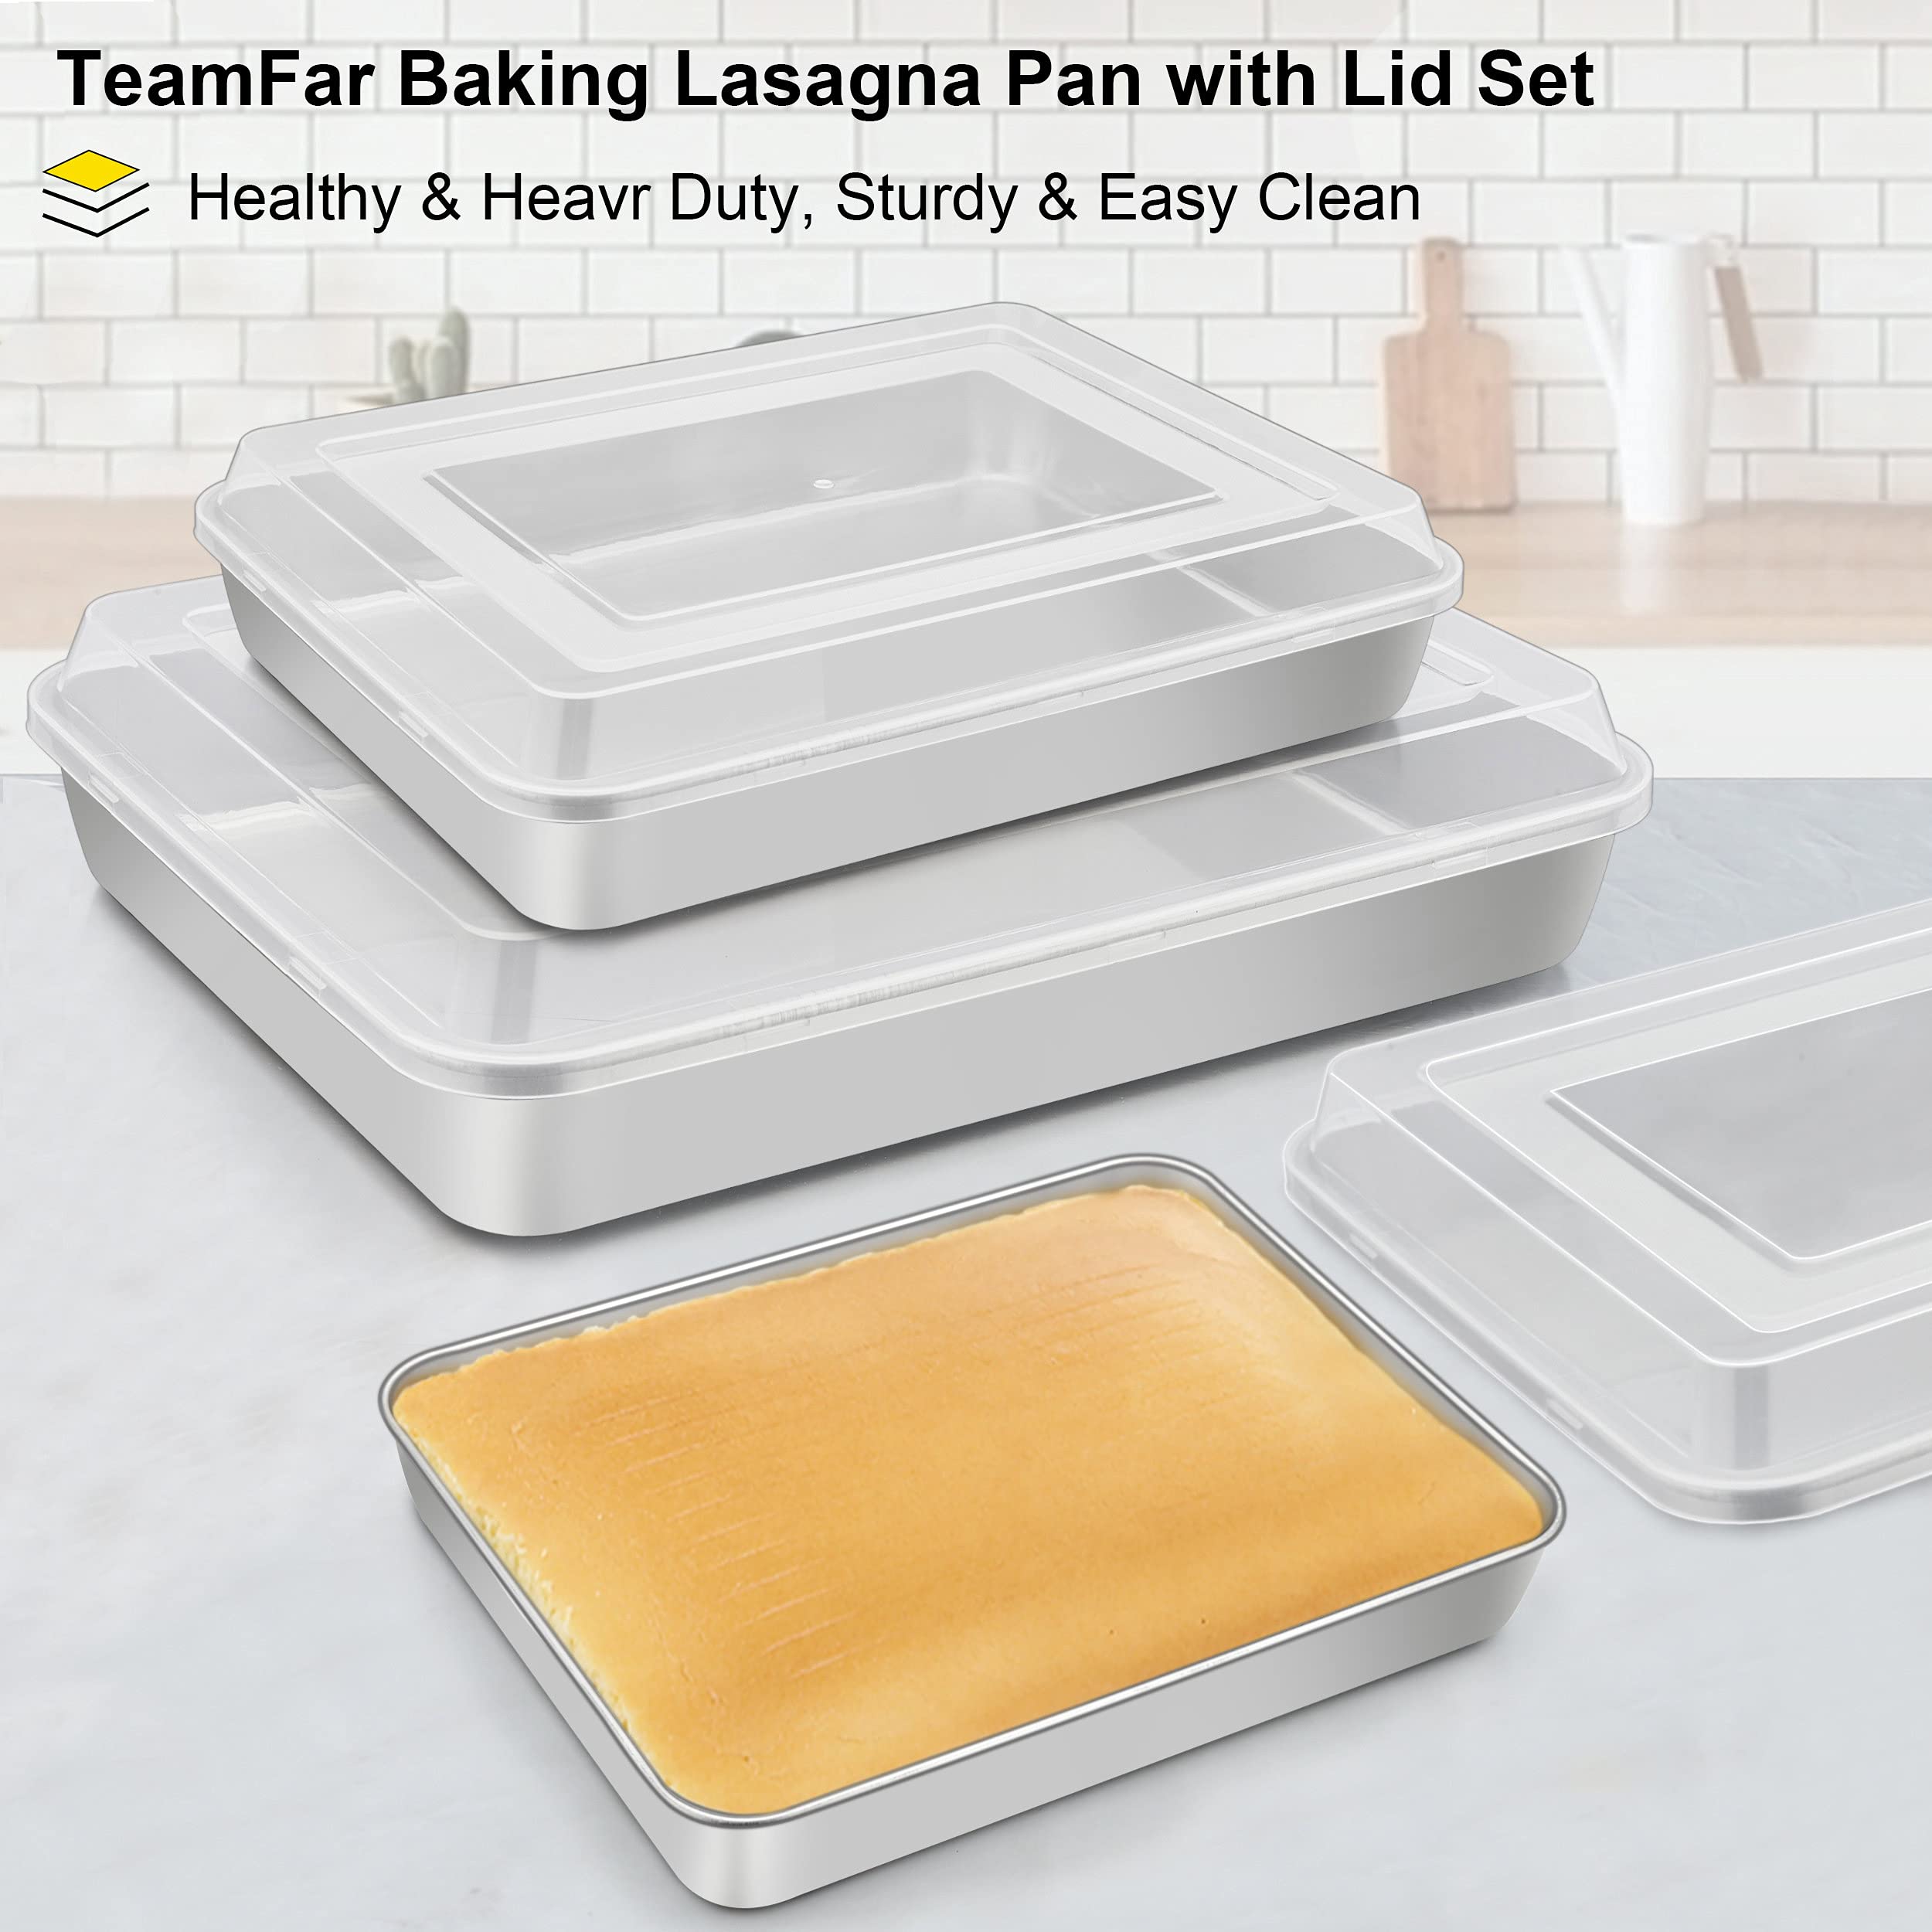 TeamFar Lasagna Pan(3 Pan & 3 Lids), 12⅖” & 10¼” & 9⅖” Cake Pan with Lids, Rectangular Baking Pan Stainless Steel Bakeware Set for Lasagna Cake Brownie, Healthy & Sturdy, Dishwasher Safe